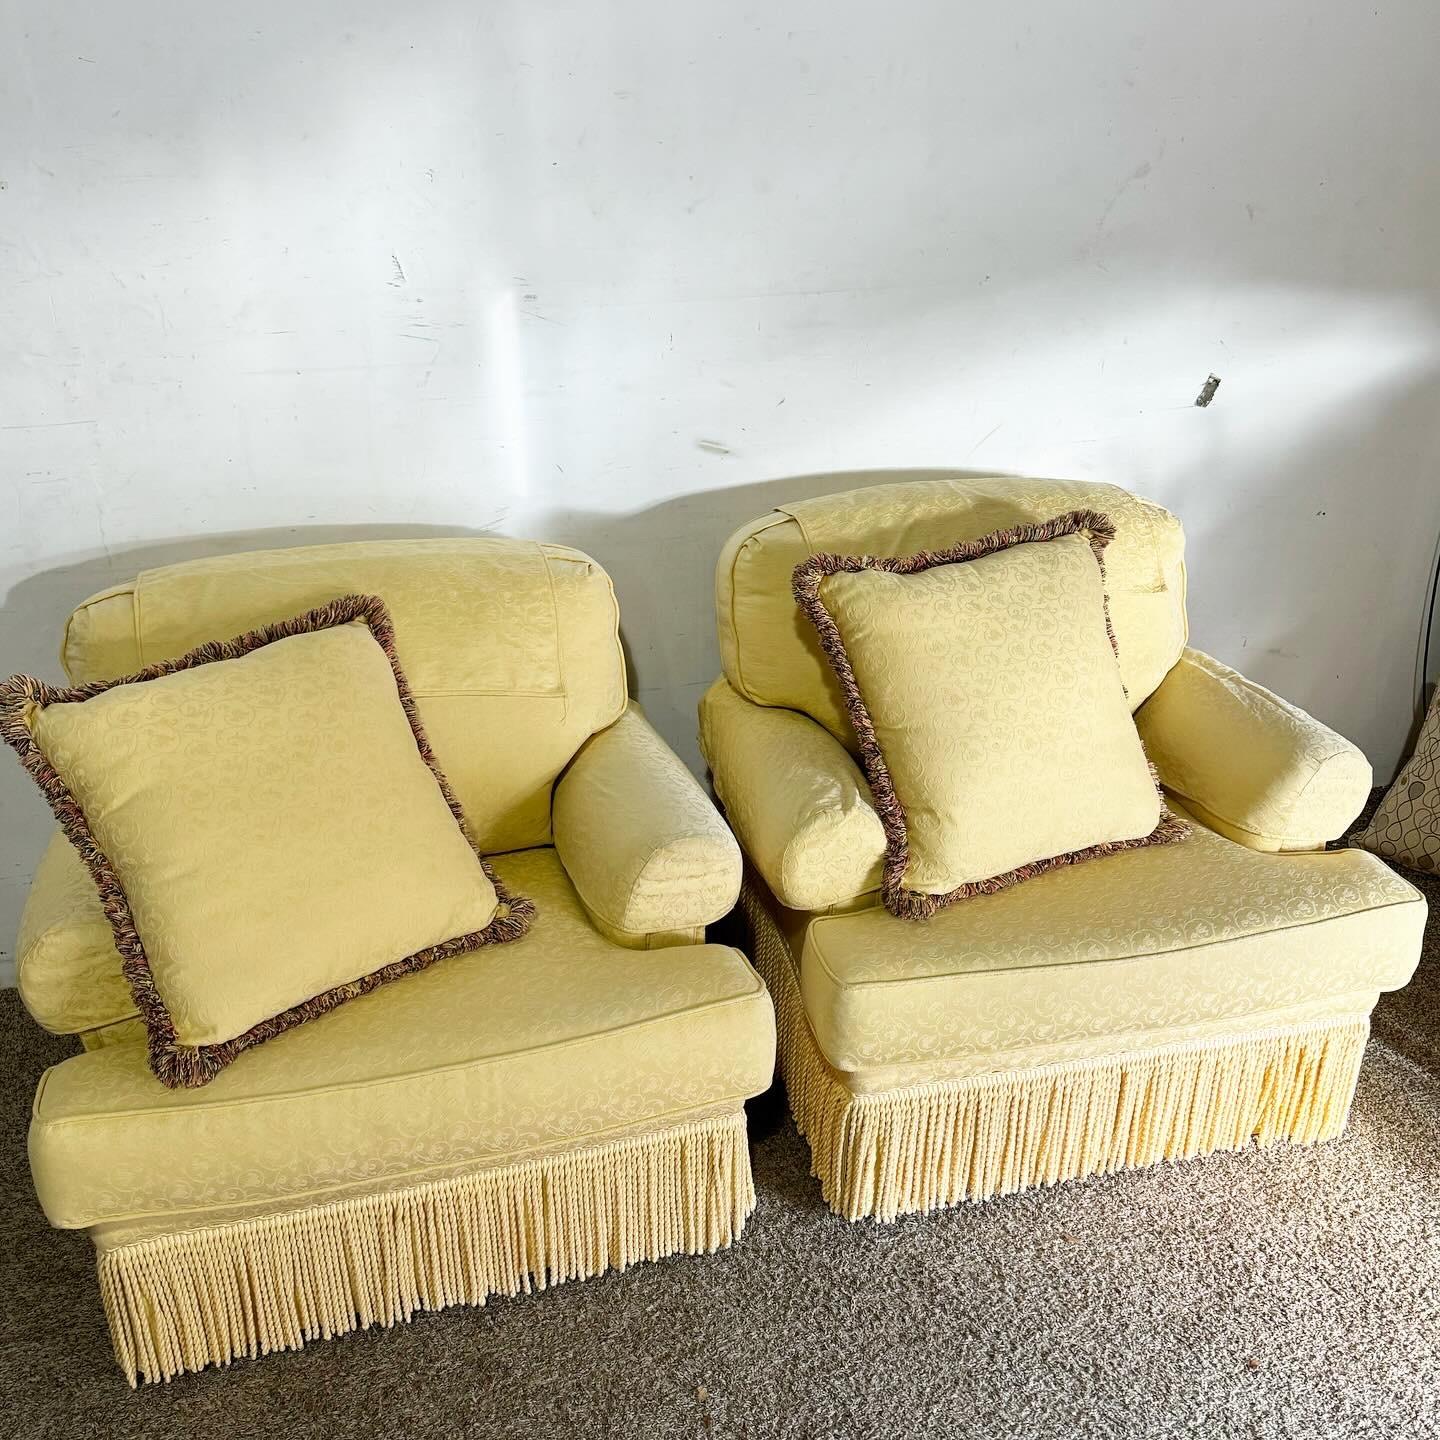 Introduisez une touche d'élégance et de dynamisme dans votre intérieur avec les chaises à bras en tissu Regency Yellow, accompagnées de coussins et de housses assortis. Ces fauteuils sont recouverts d'un tissu jaune vif qui illumine instantanément